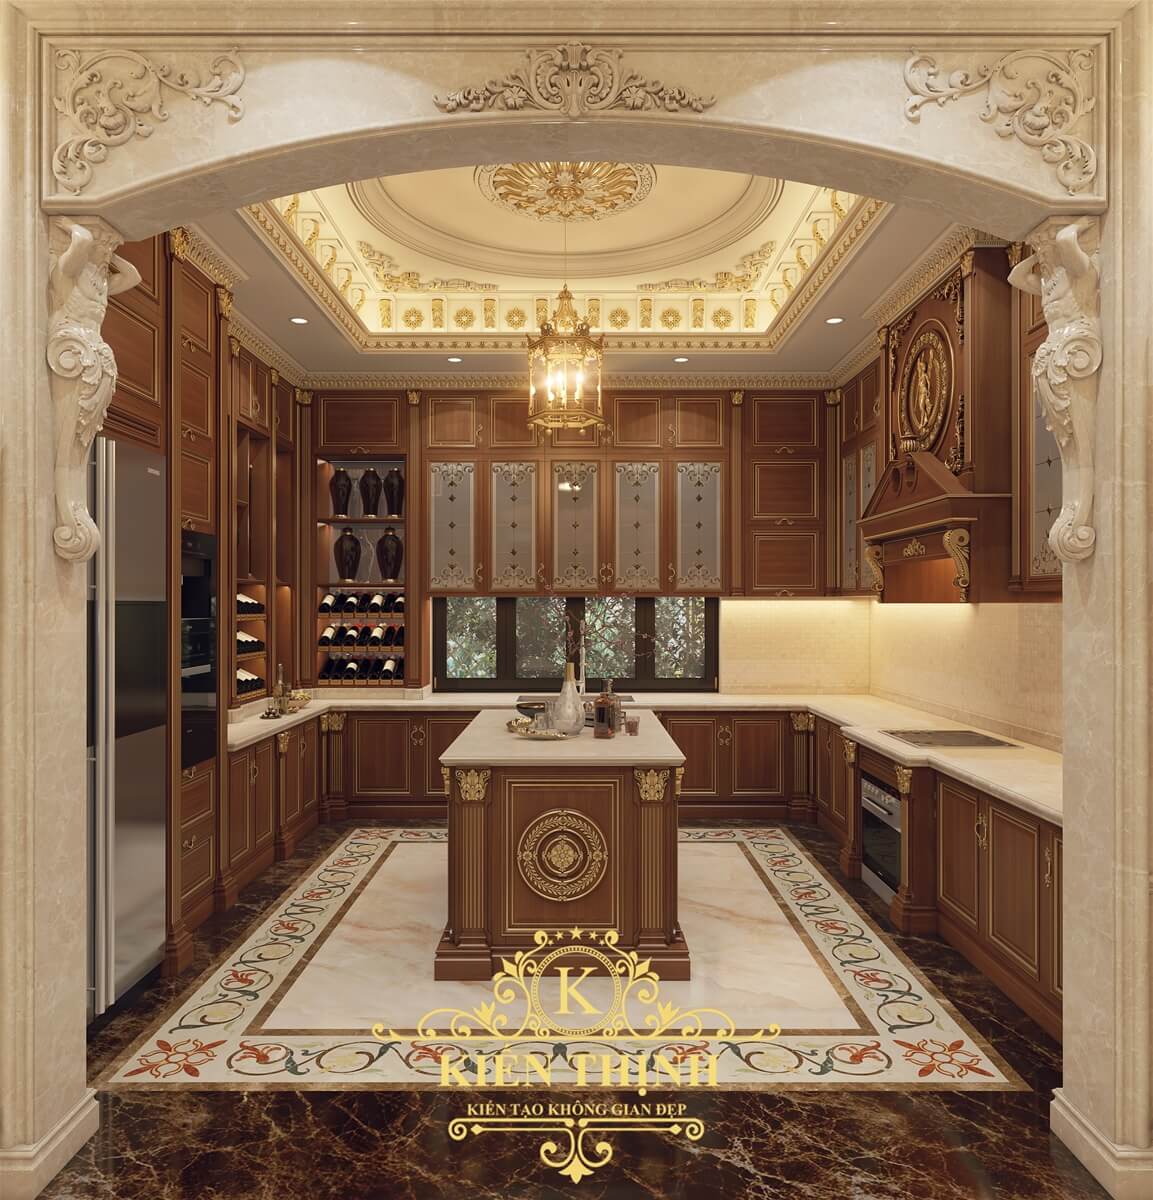 Mẫu thiết kế nội thất phòng ăn biệt thự tân cổ điển Pháp đẹp sang trọng tại Đà Nẵng